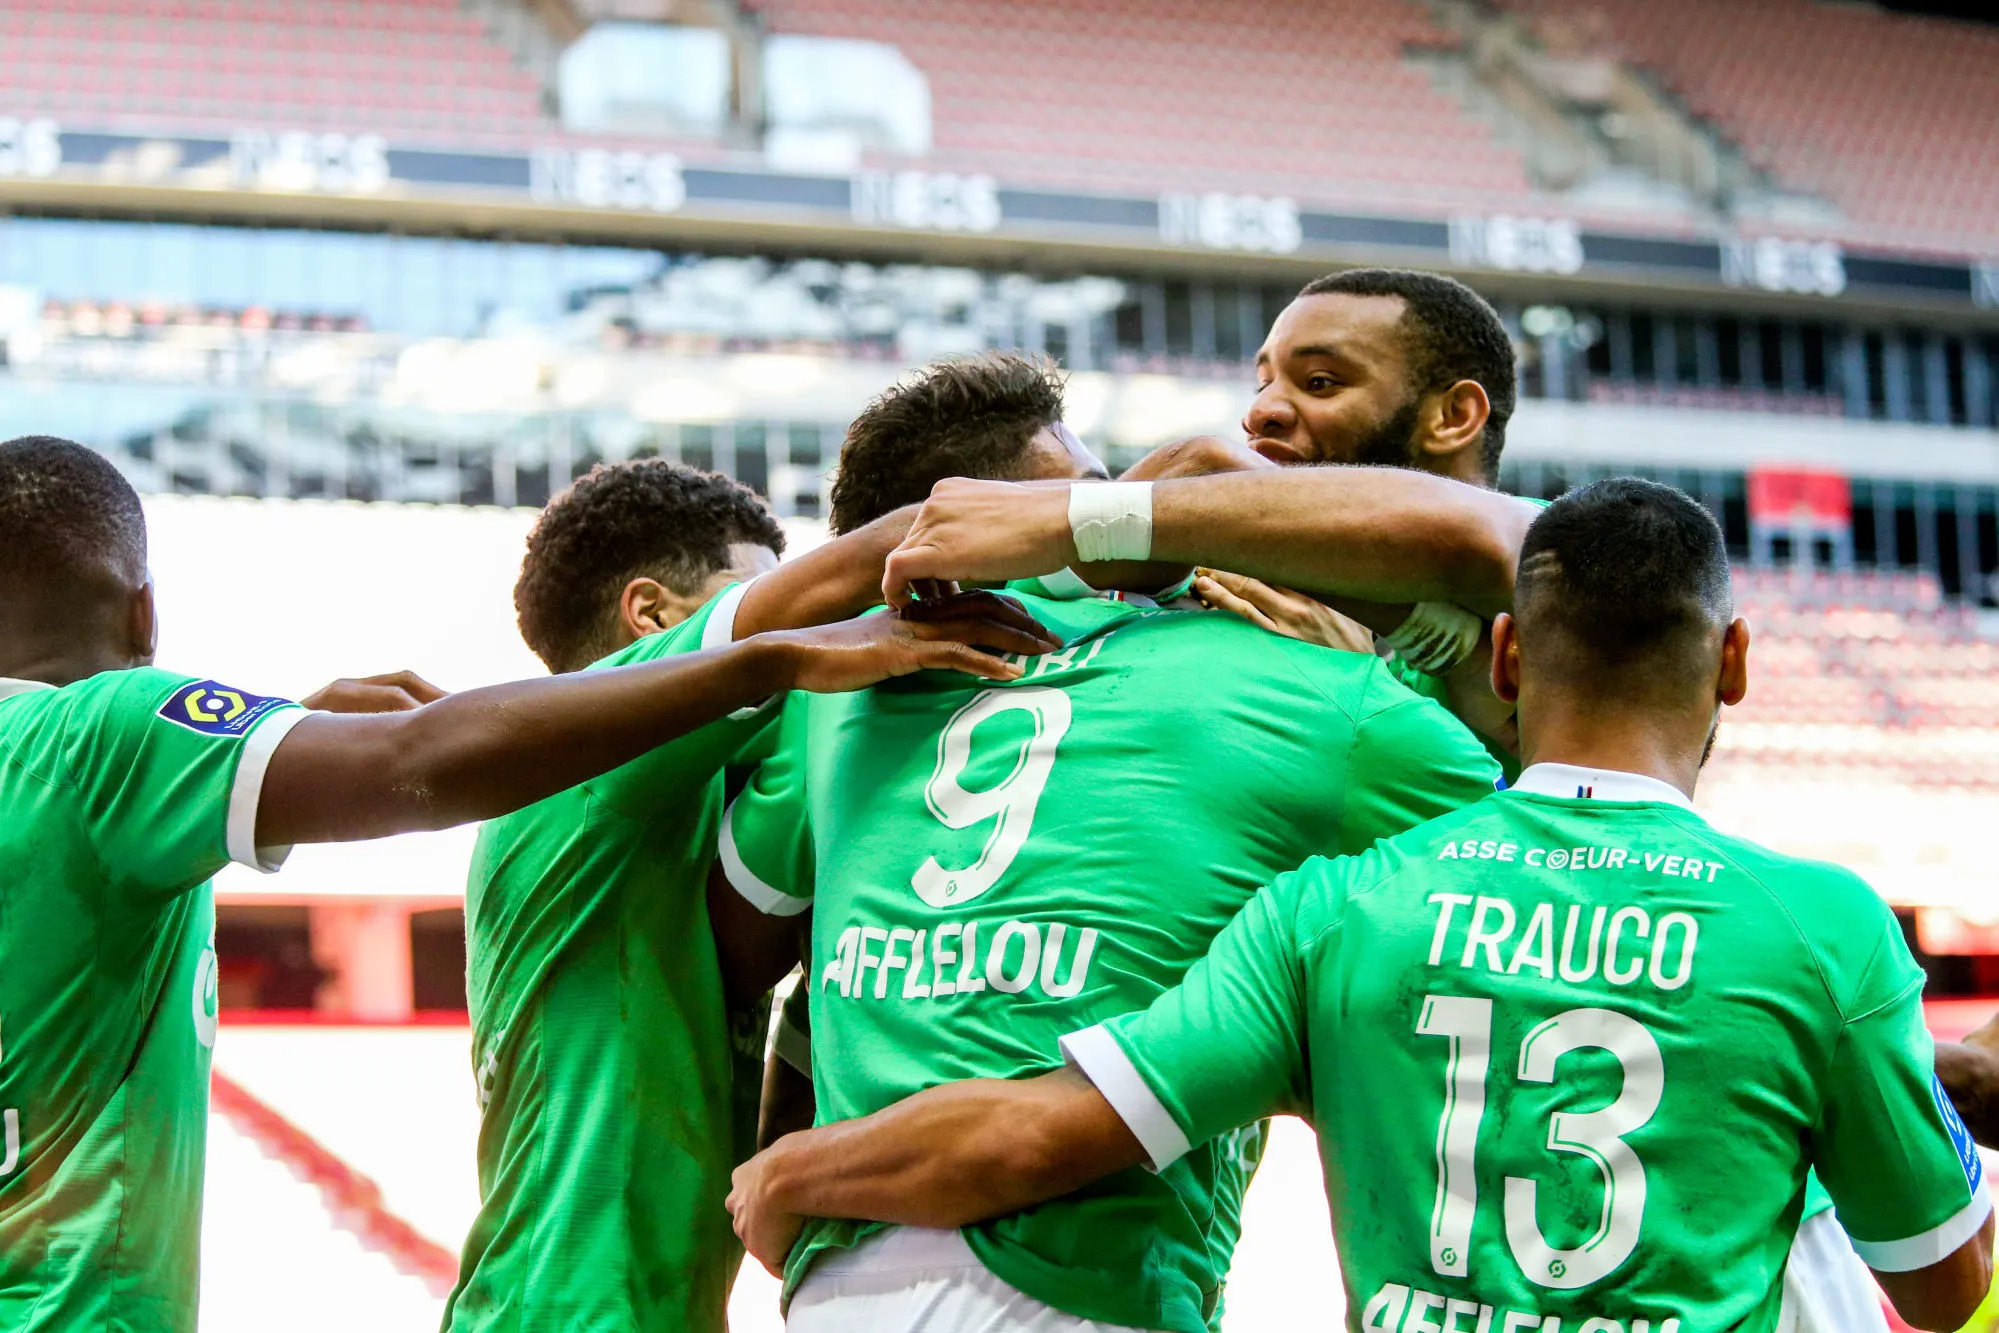 Pronostic Saint-Étienne Reims : Analyse, cotes et prono du match de Ligue 1